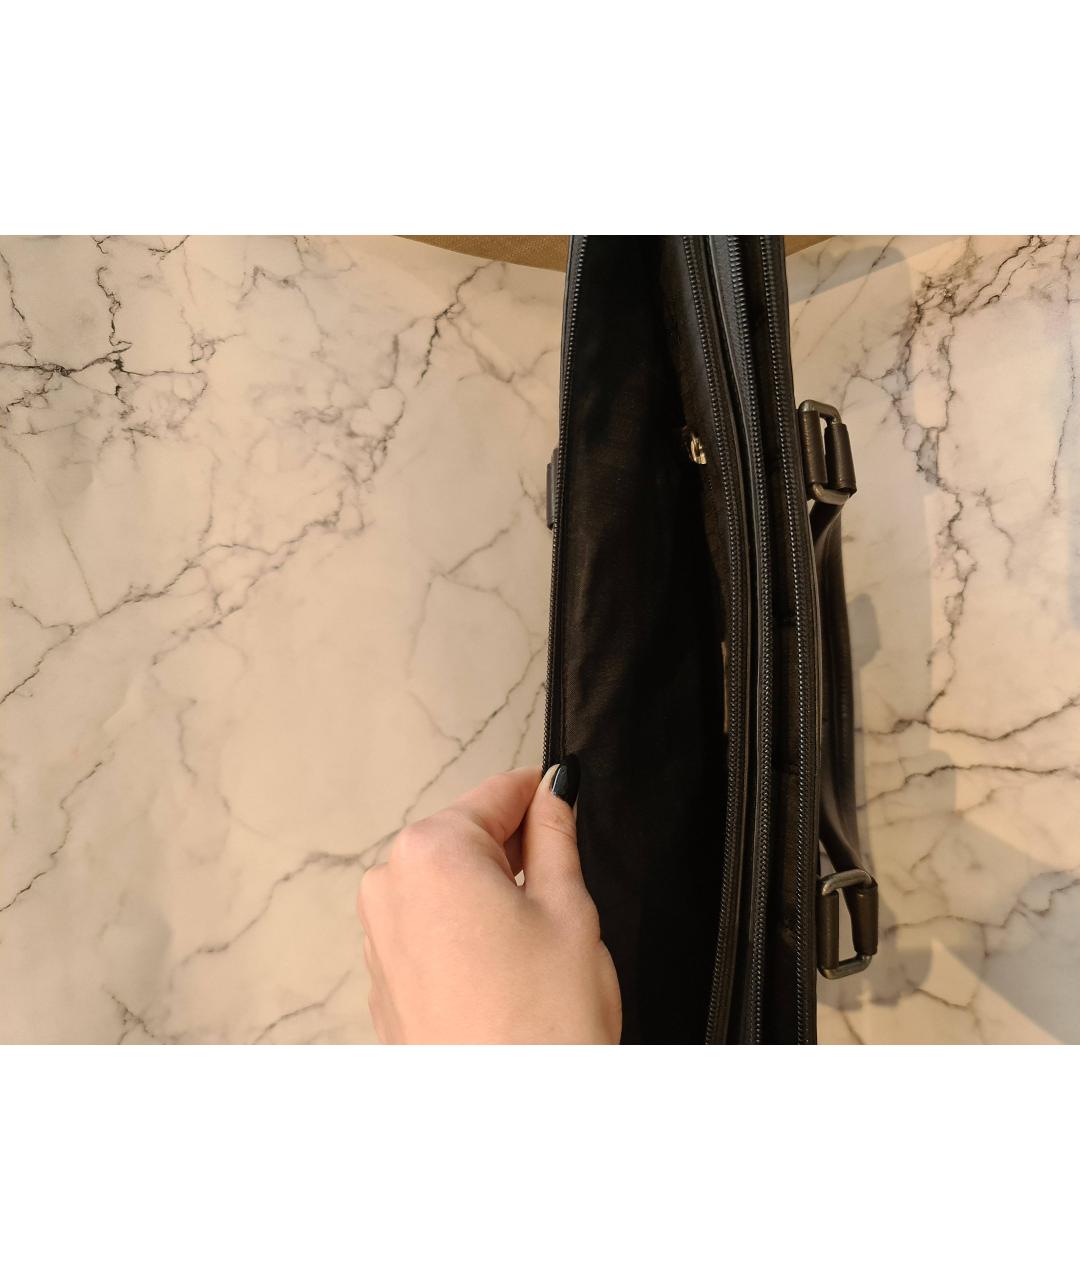 TUMI Черный кожаный портфель, фото 2